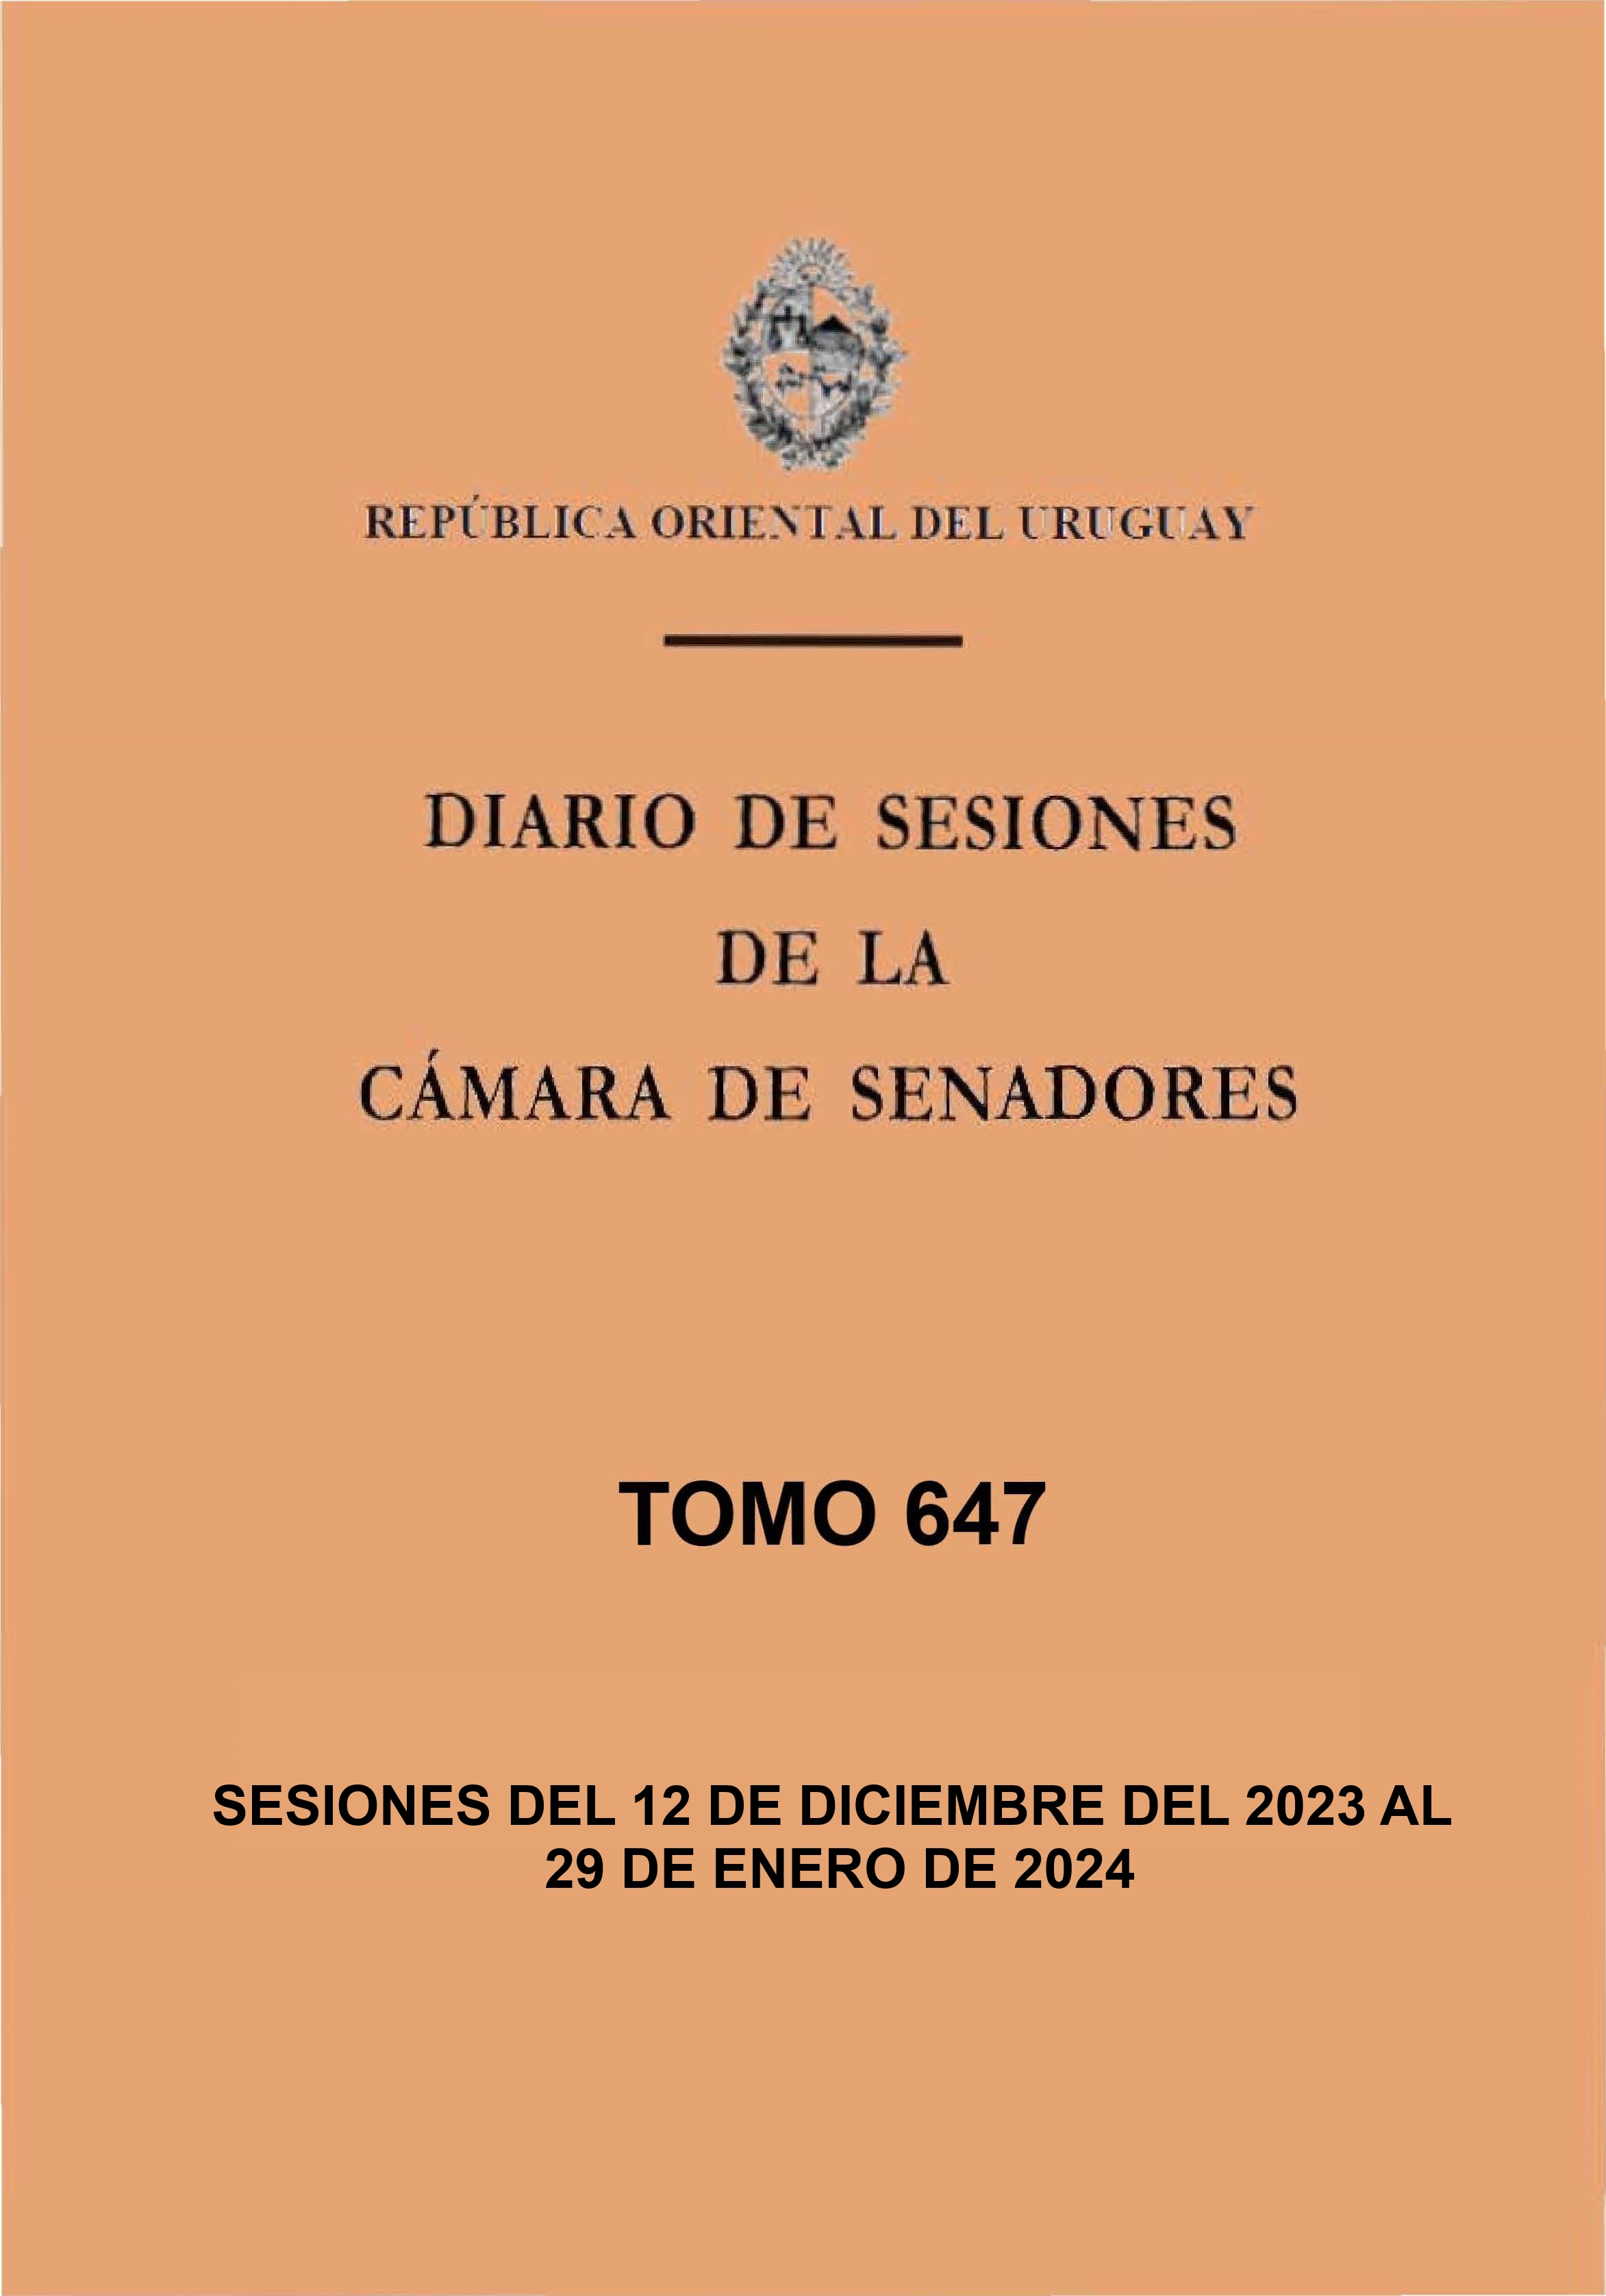 DIARIO DE SESIONES DE LA CAMARA DE SENADORES del 19/12/2023